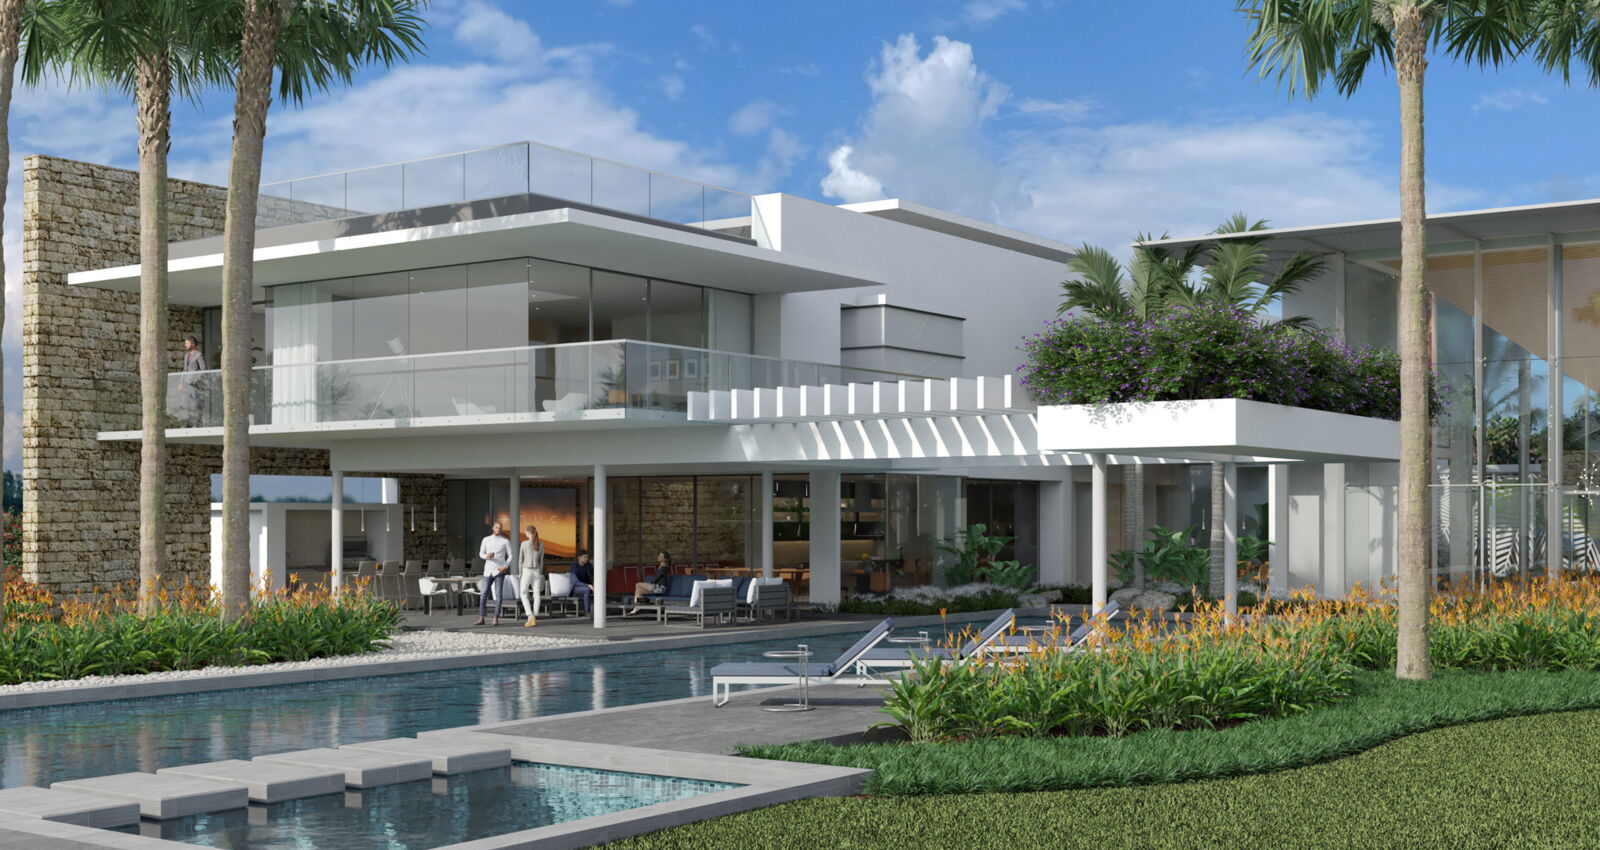 Dorado Beach Beacon residence luxury pool and patio